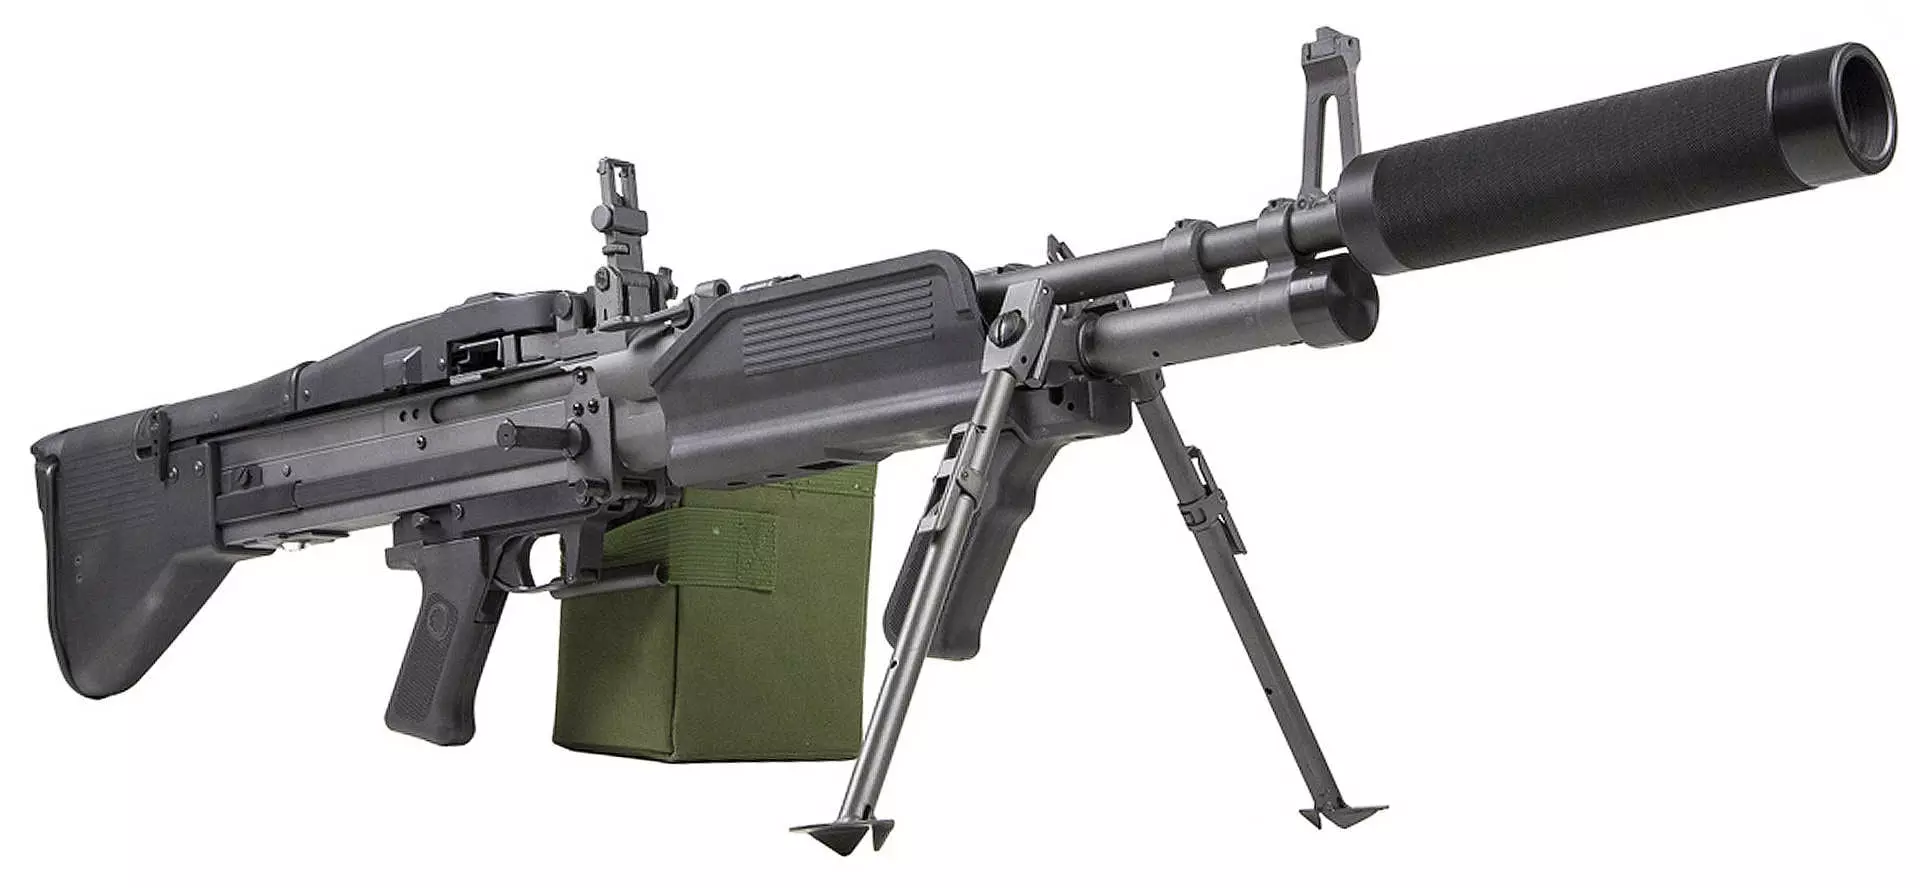 M60 laser tag machine gun right side